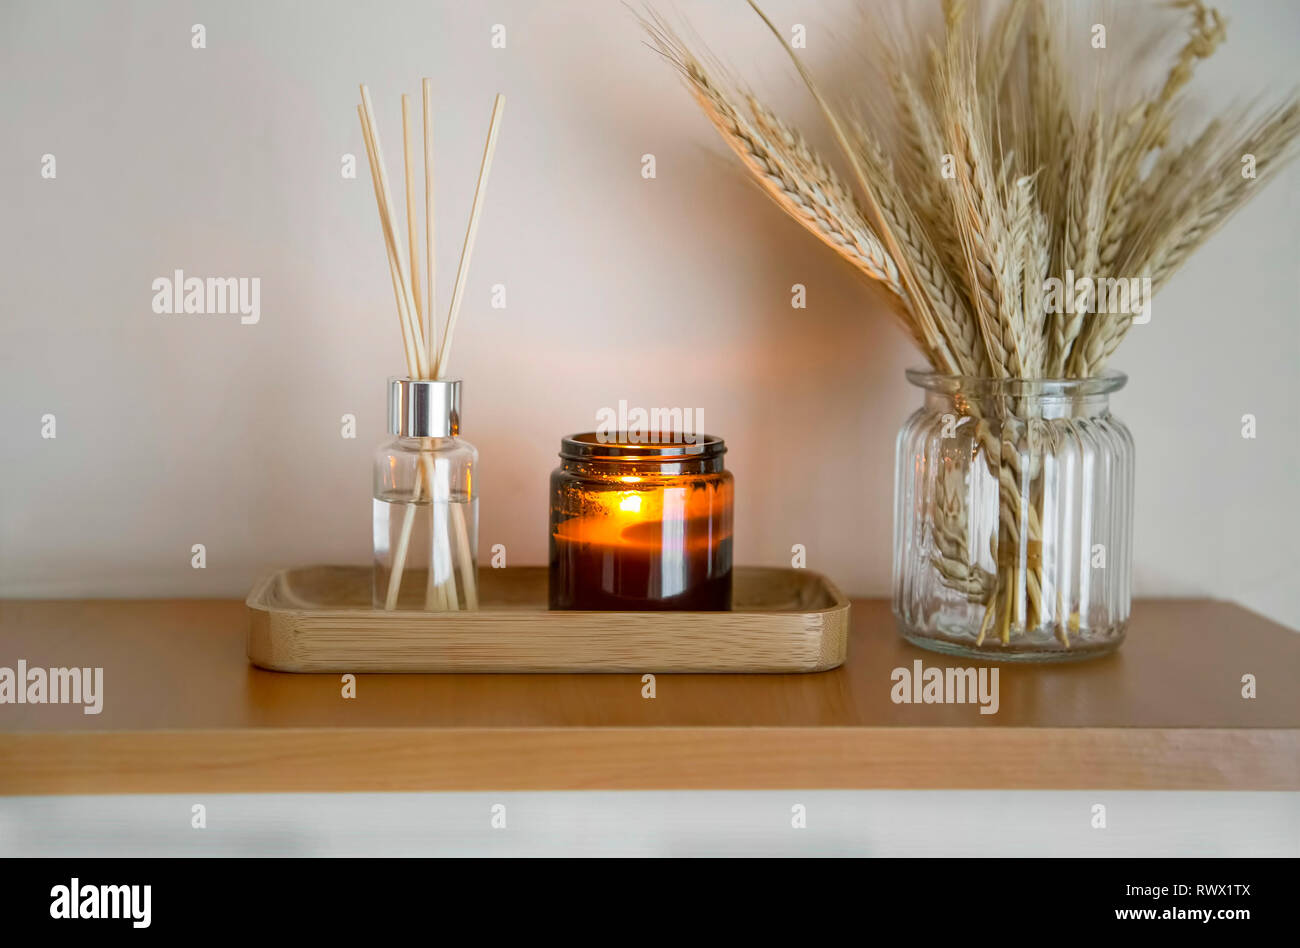 Home decor. Arredamento scaffale con candela, diffusore di aroma e di  spighe di grano in un vaso, lifestyle interior decor dettagli Foto stock -  Alamy